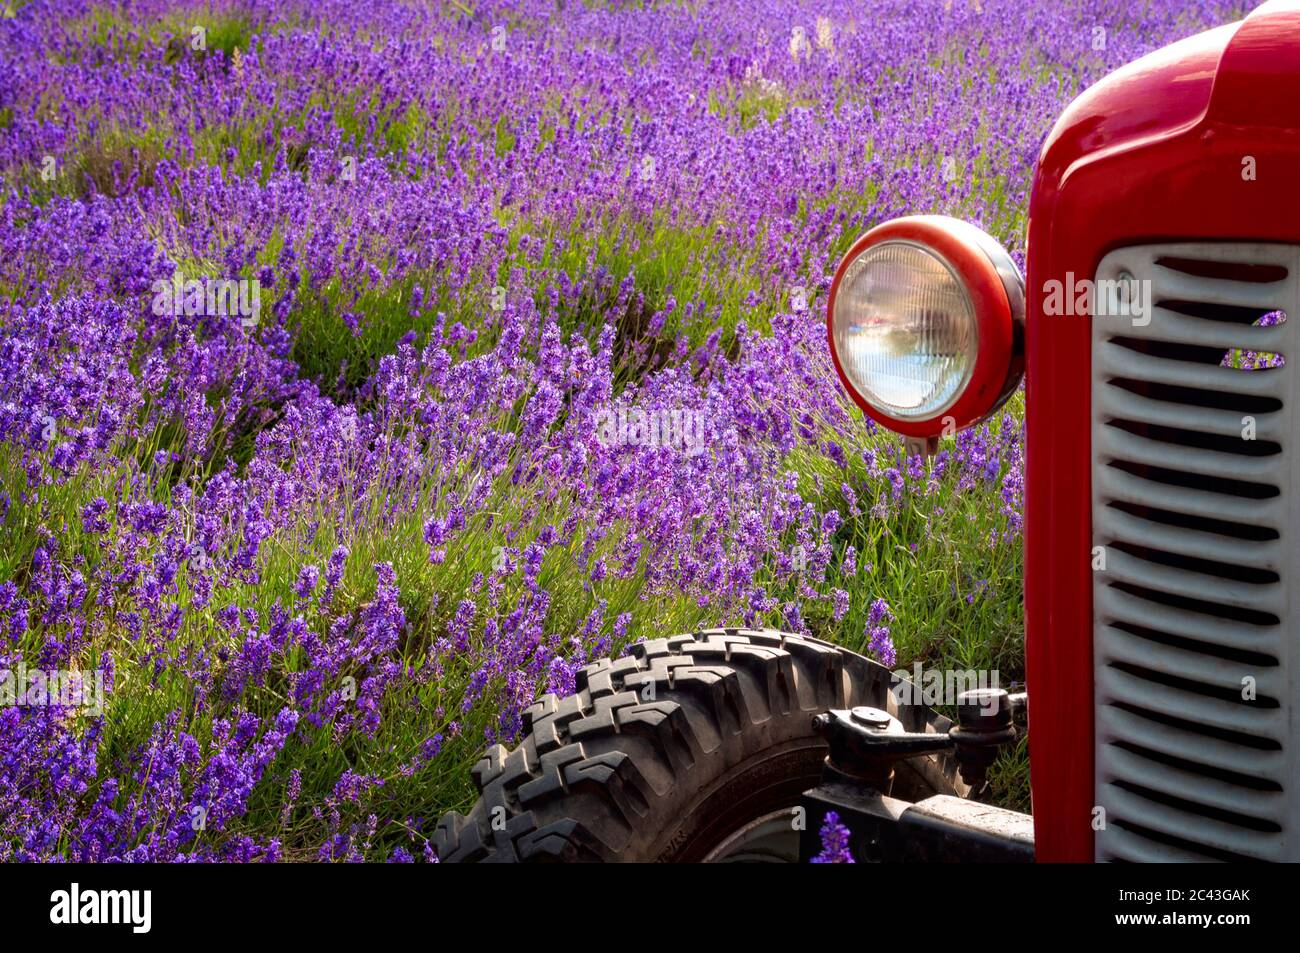 Thème de la récolte estivale et de l'agriculture de campagne avec gros plan sur le phare et vieux tracteur rouge dans un champ coloré de laven pourpre Banque D'Images